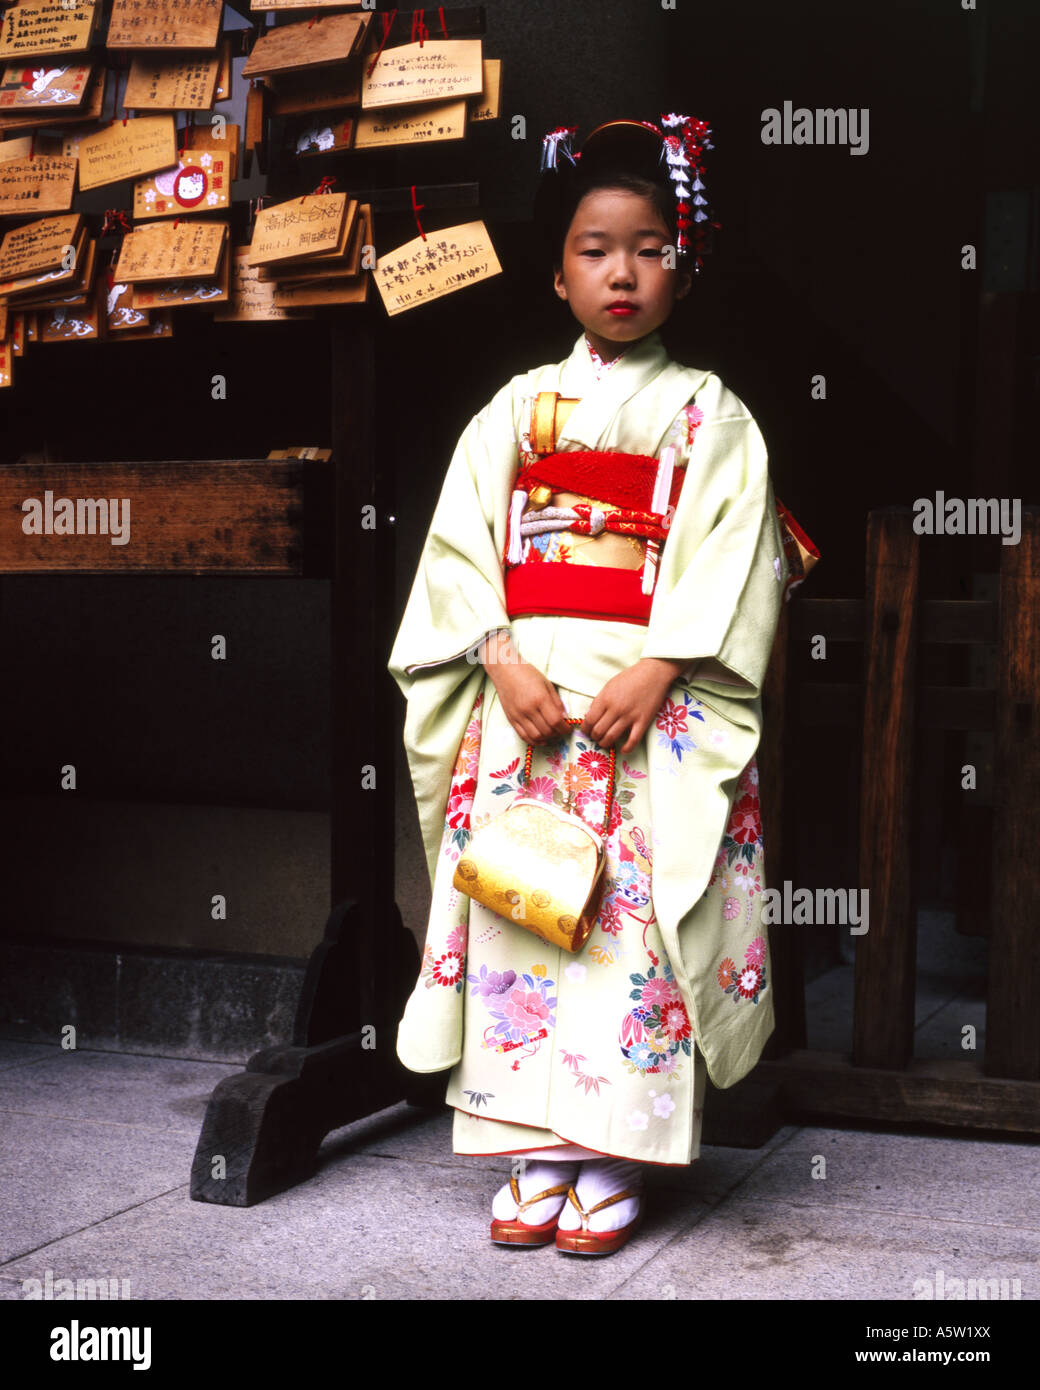 junge Mädchen makellos gekleidet in traditionellen Geisha Kleidung Tokio japan Stockfoto